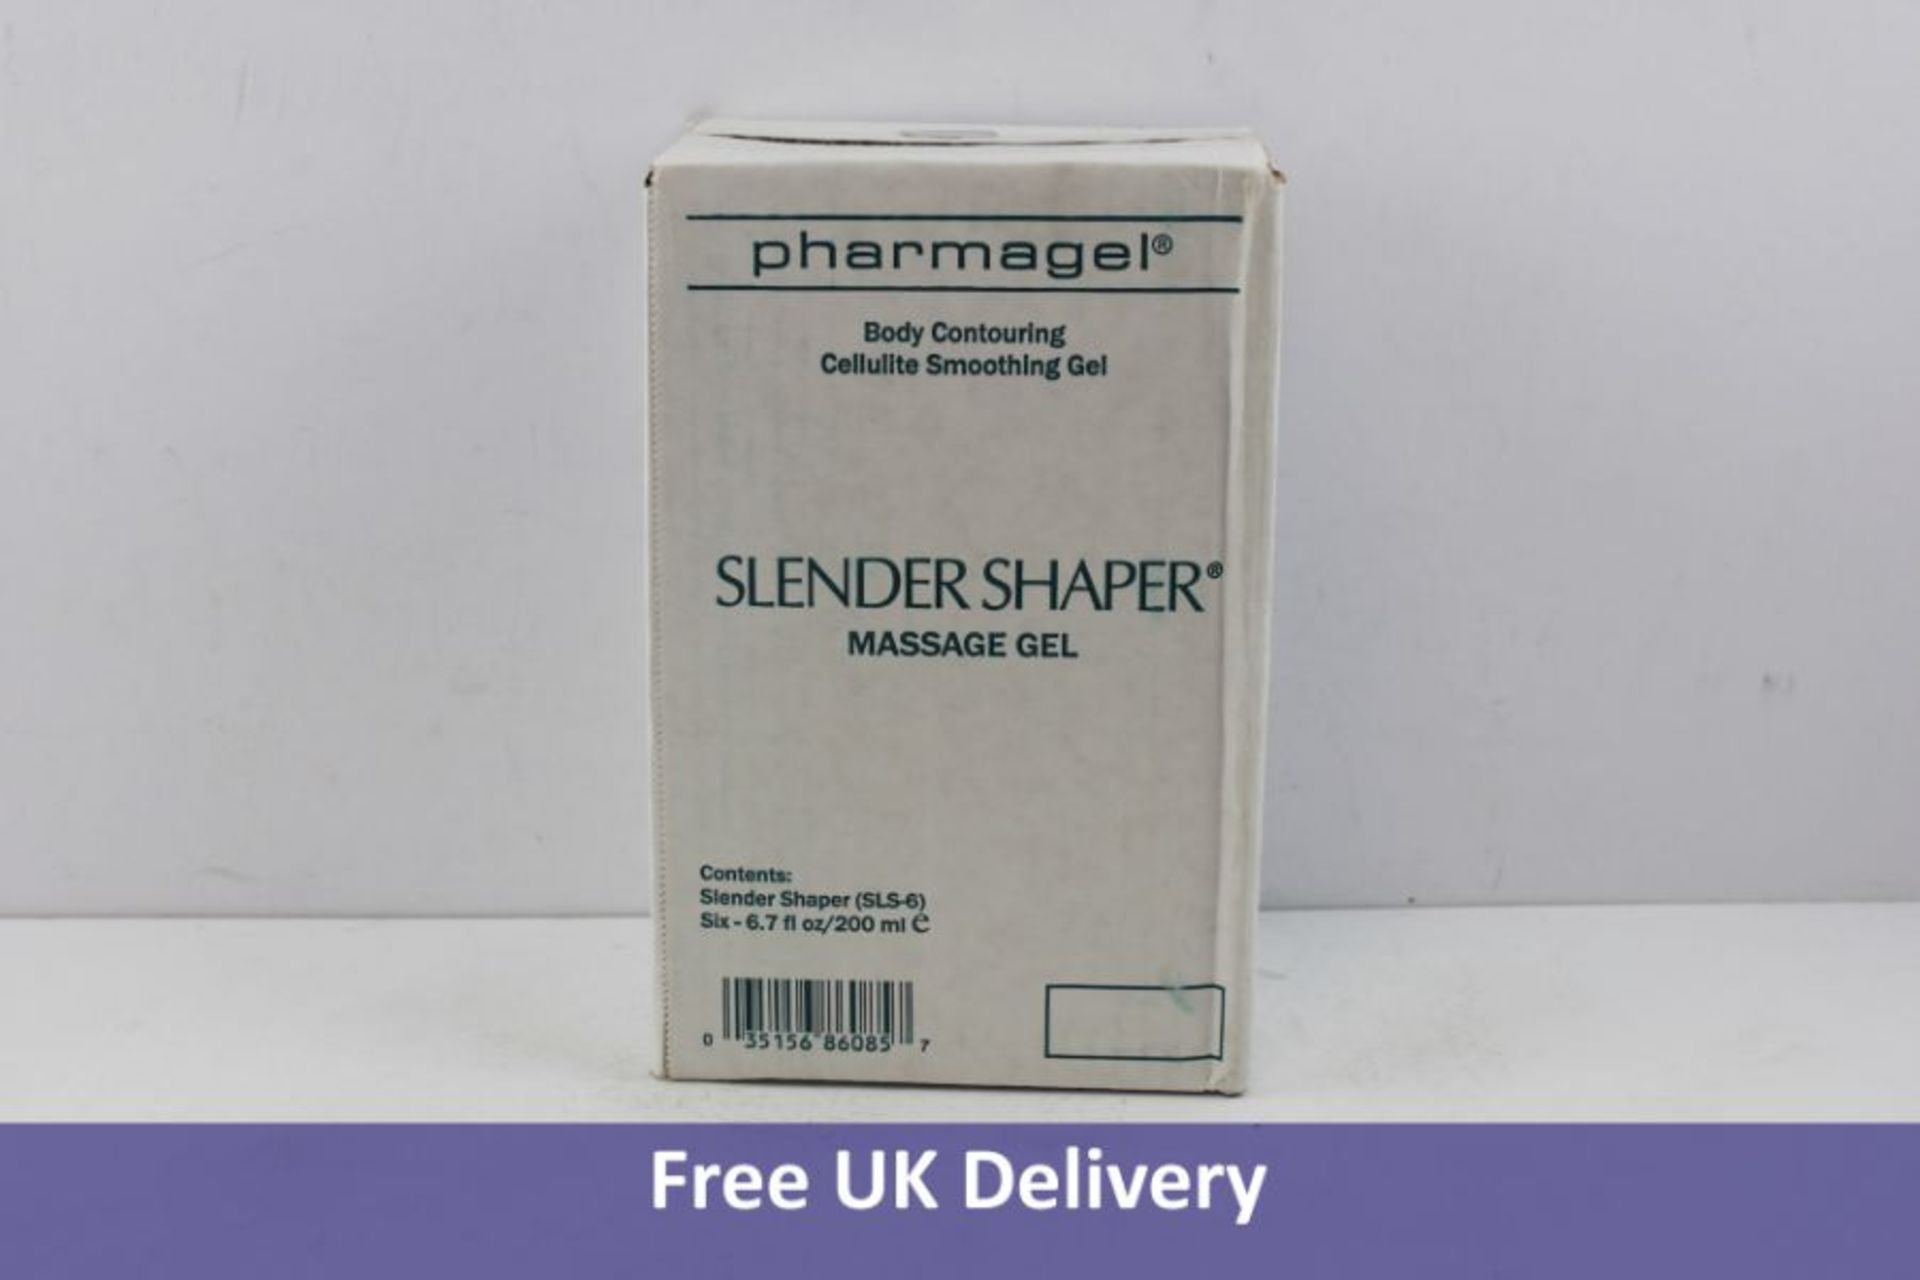 Box of 6 Pharmagel Slender Shaper Massage Gels